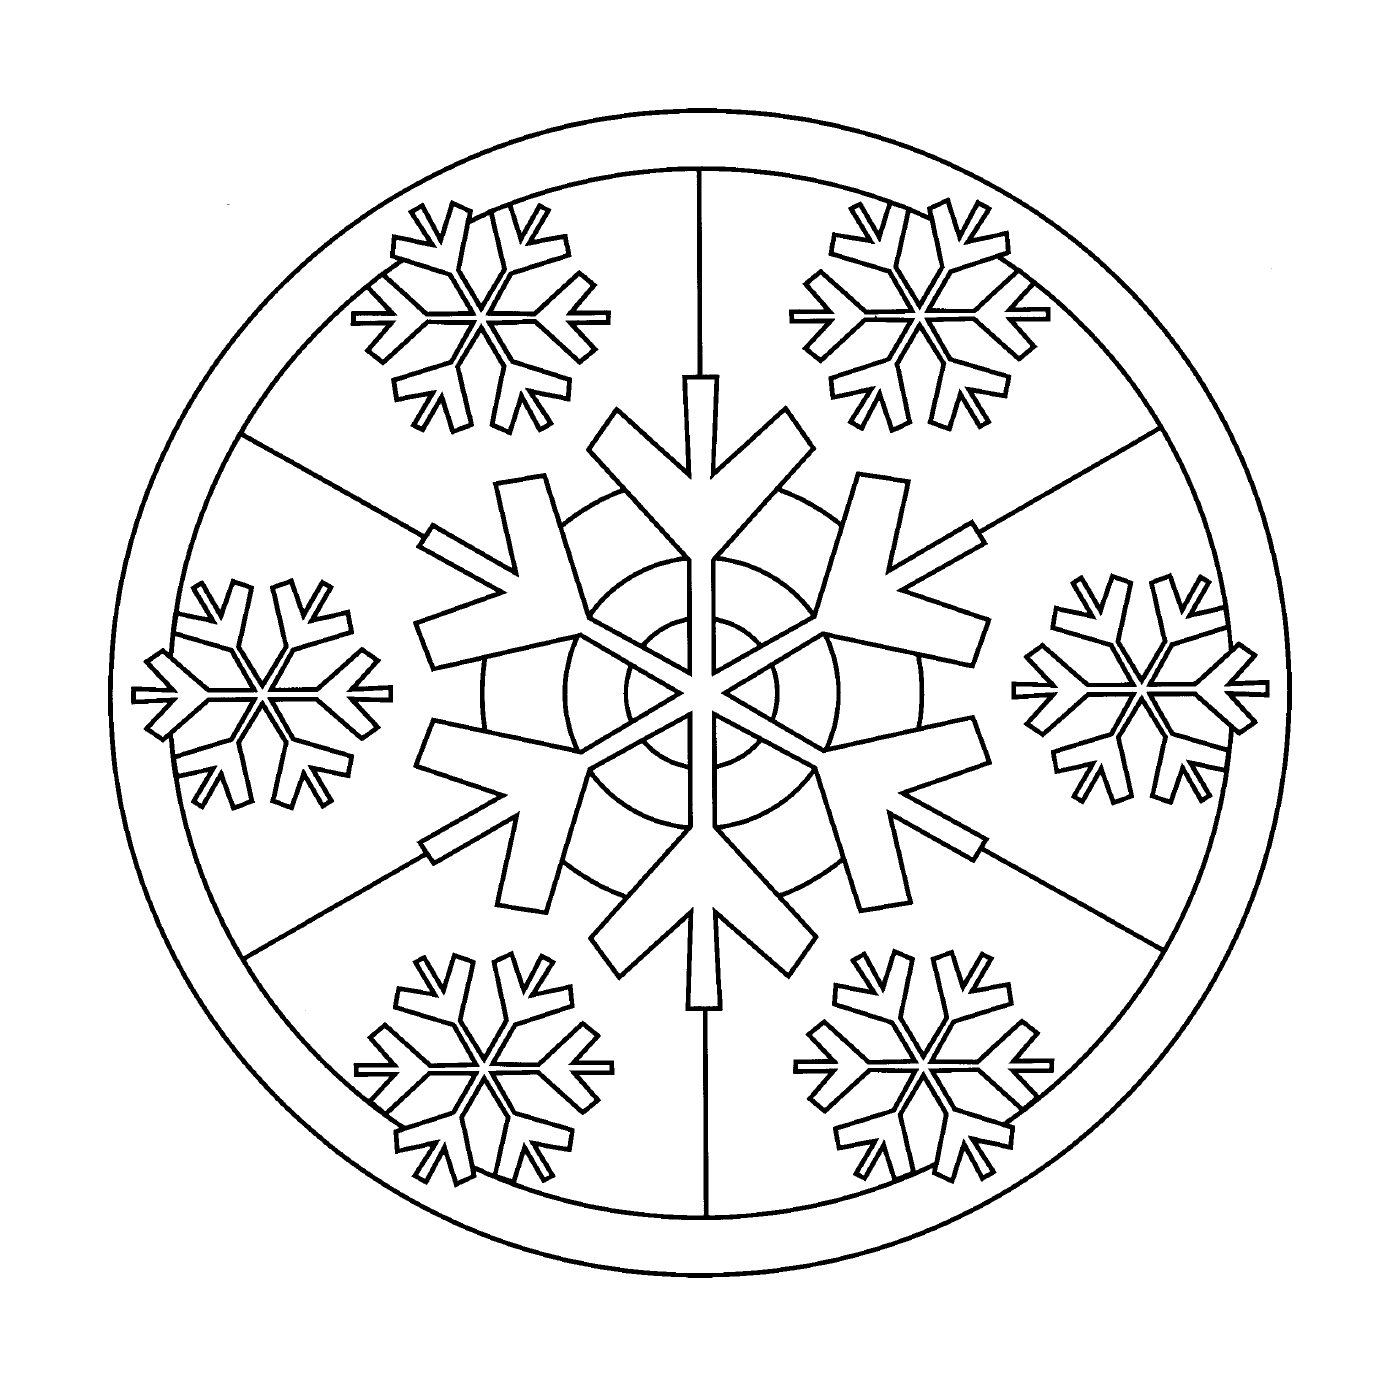  Delicate snowflakes 